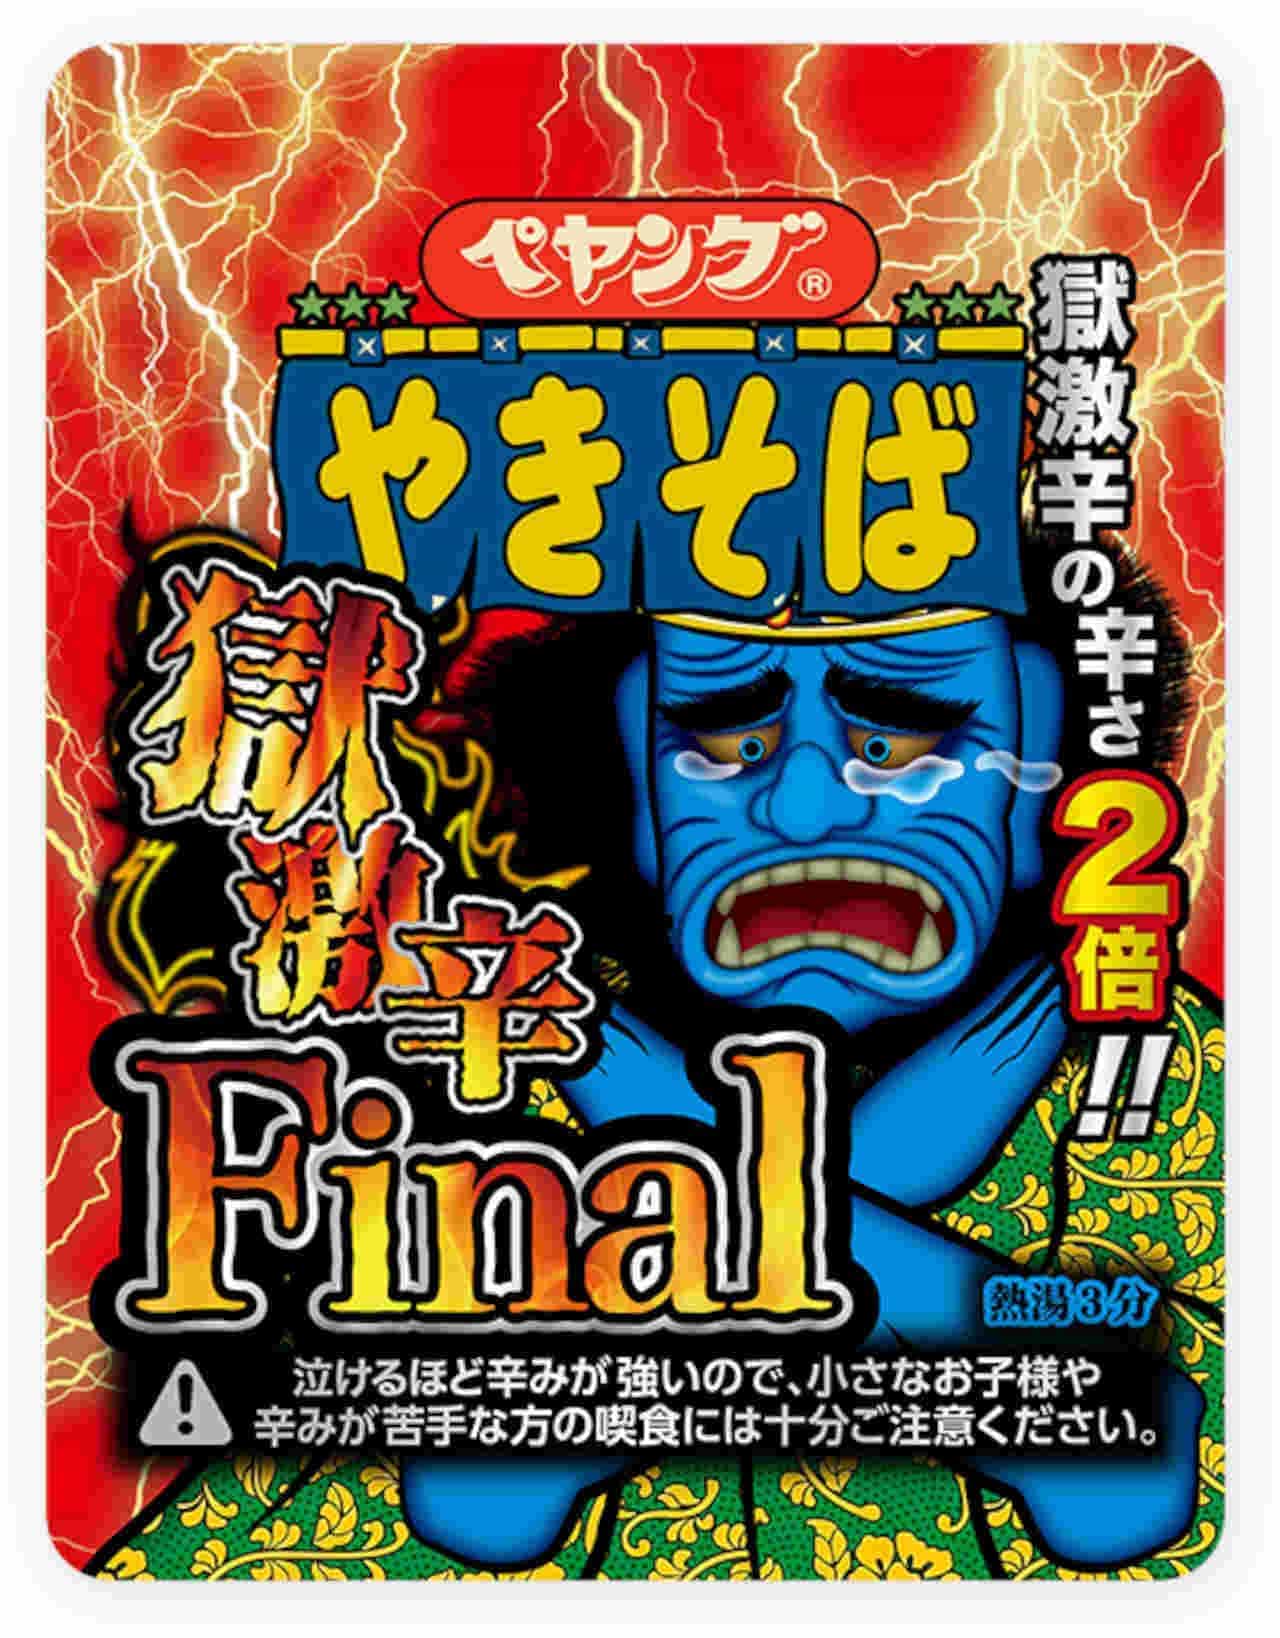 Maruka Foods "Peyoung Jigoku Gekihot Yakisoba Final" (Peyoung Jigoku Gekihot Yakisoba Final)